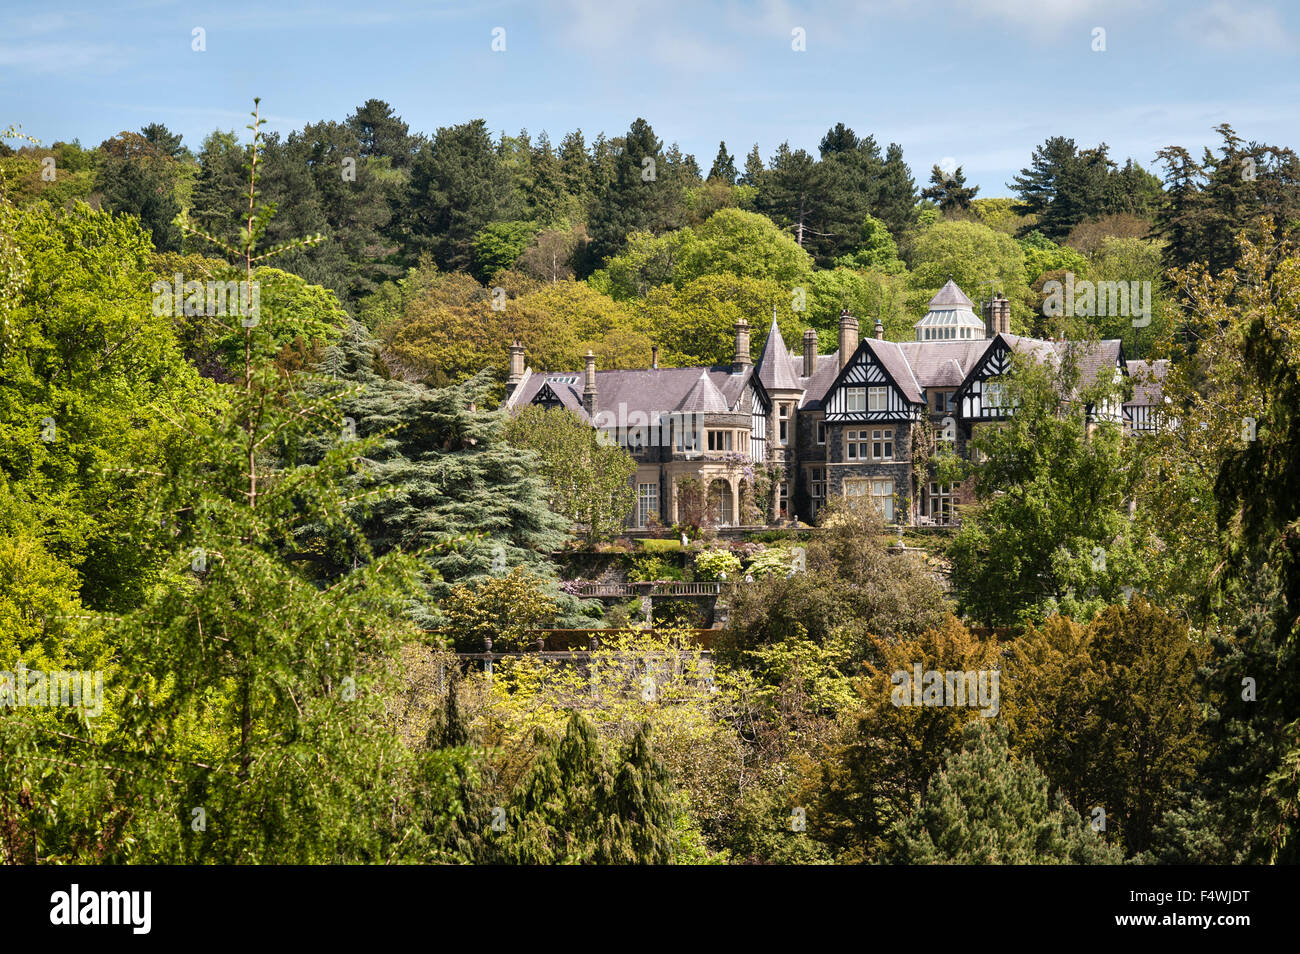 Jardin de Bodnant, Conwy, Pays de Galles, Royaume-Uni. Hôtel de Bodnant, vu de l'autre côté de la vallée à la fin du printemps Banque D'Images